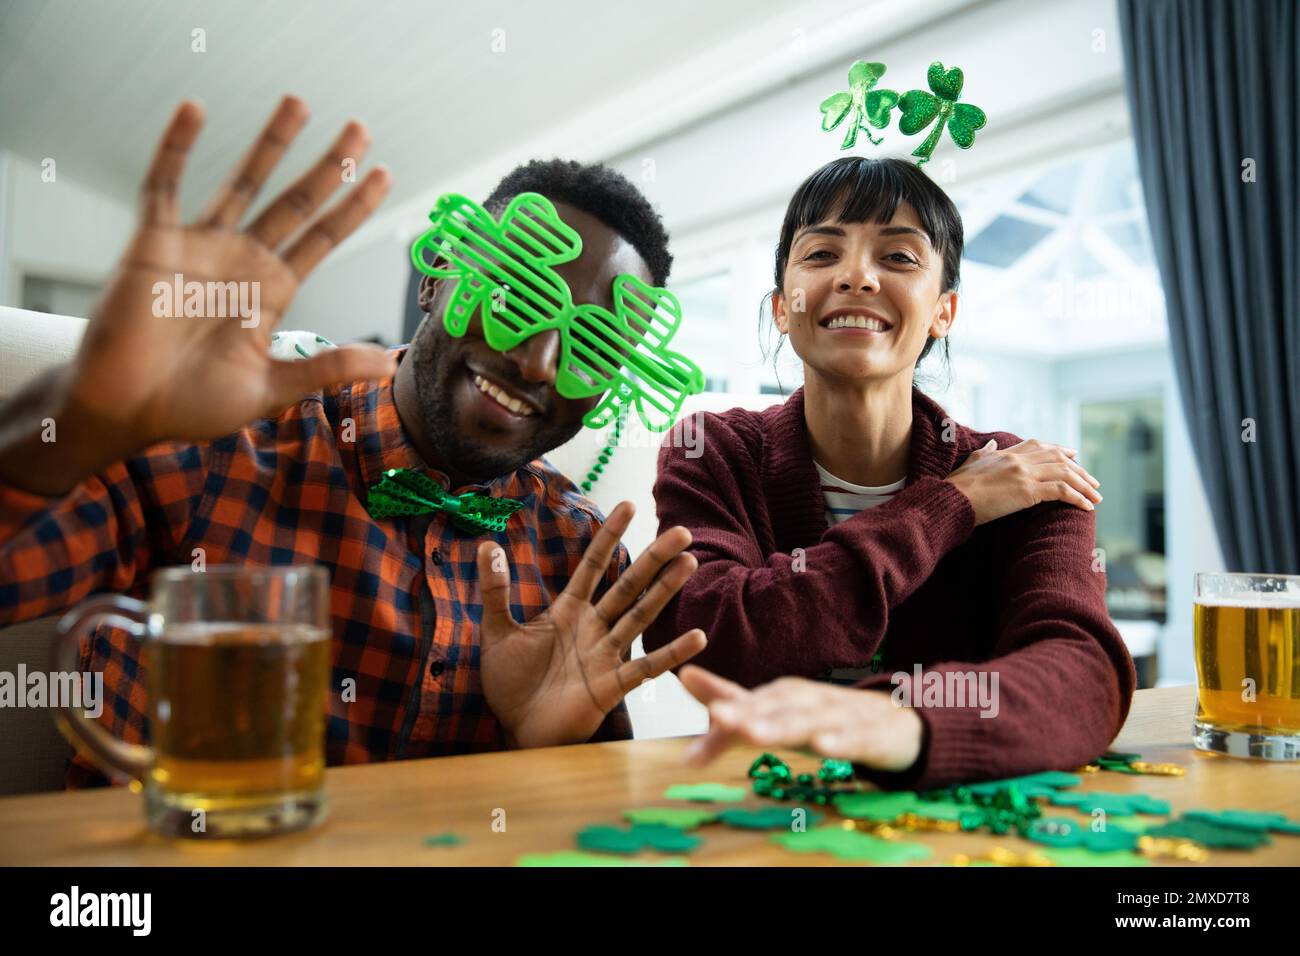 Portrait d'amis multiraciaux heureux avec des lunettes de fantaisie shamrock et un bandeau le jour de St patrick Banque D'Images